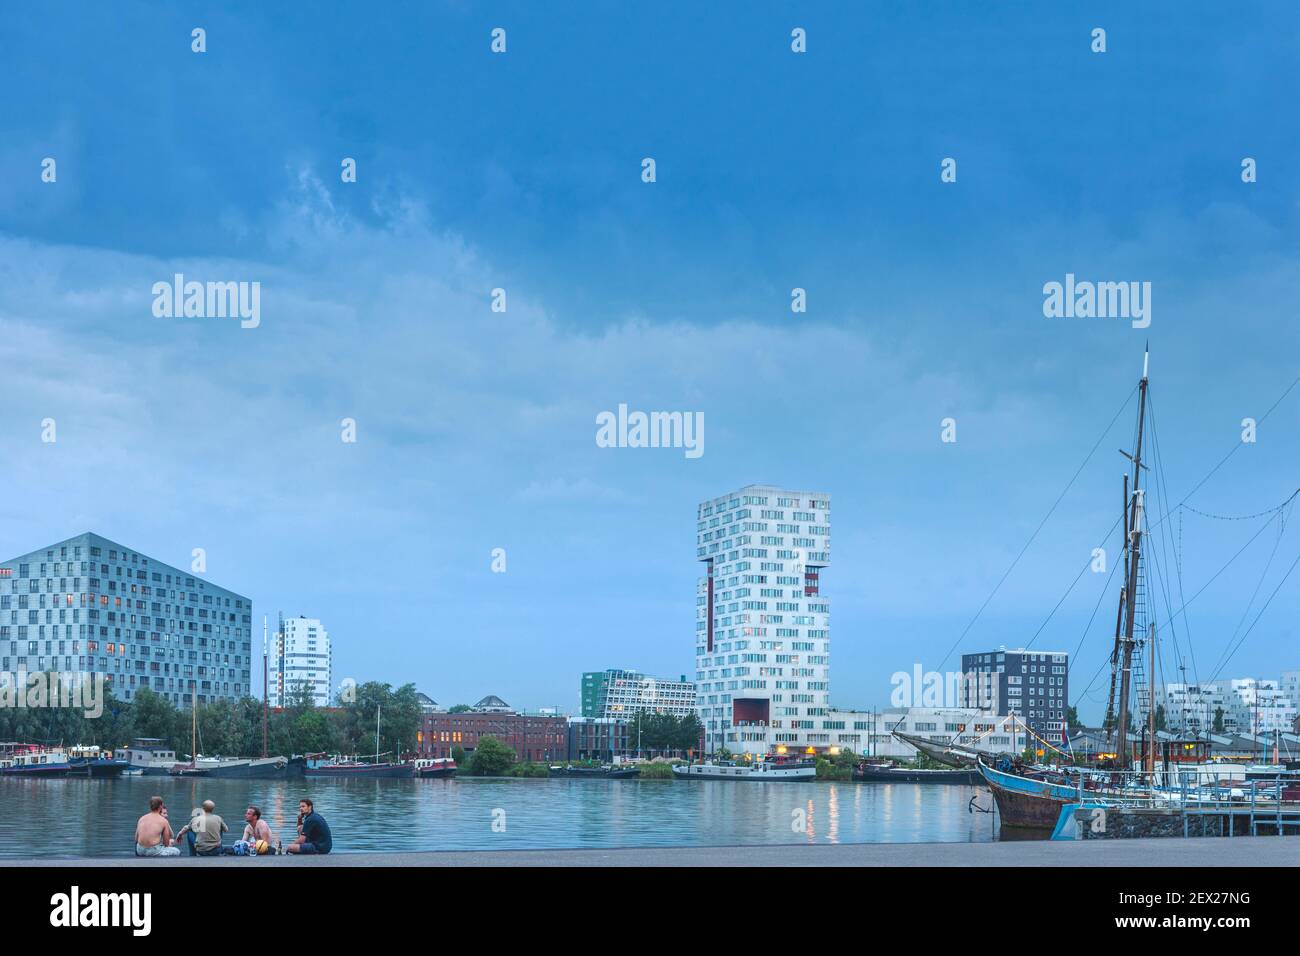 Le bâtiment Whale (à gauche du cadre) et les bâtiments résidentiels et de bureaux modernes dans les Docklands de l'est (Oostelijk Havengebied), Amsterdam, pays-Bas Banque D'Images